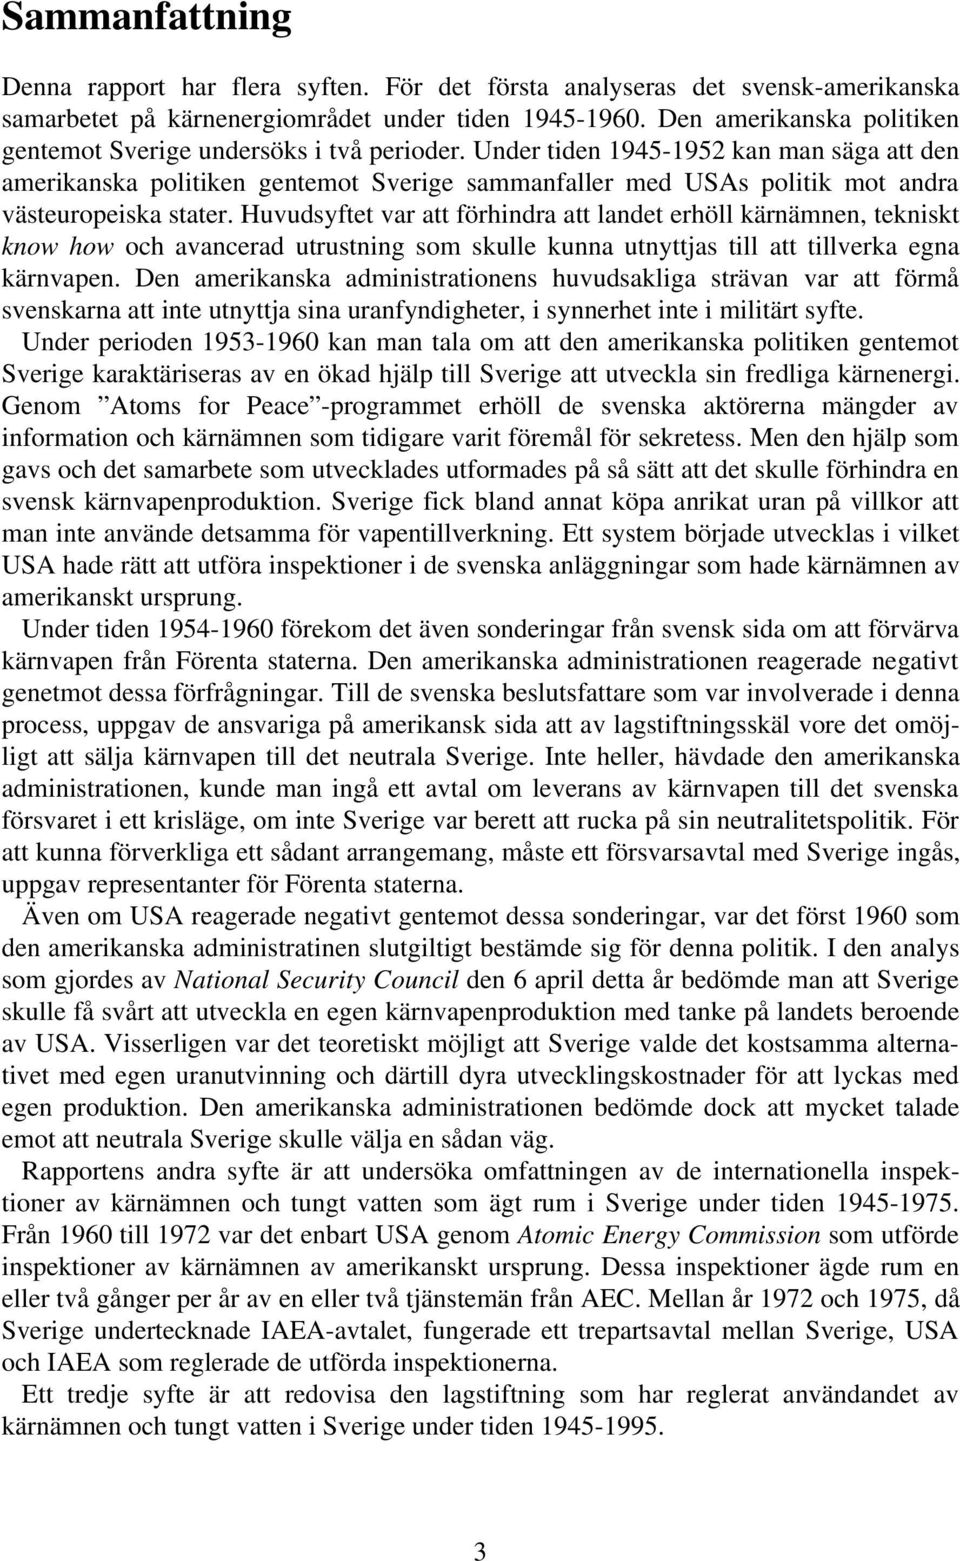 Under tiden 1945-1952 kan man säga att den amerikanska politiken gentemot Sverige sammanfaller med USAs politik mot andra västeuropeiska stater.